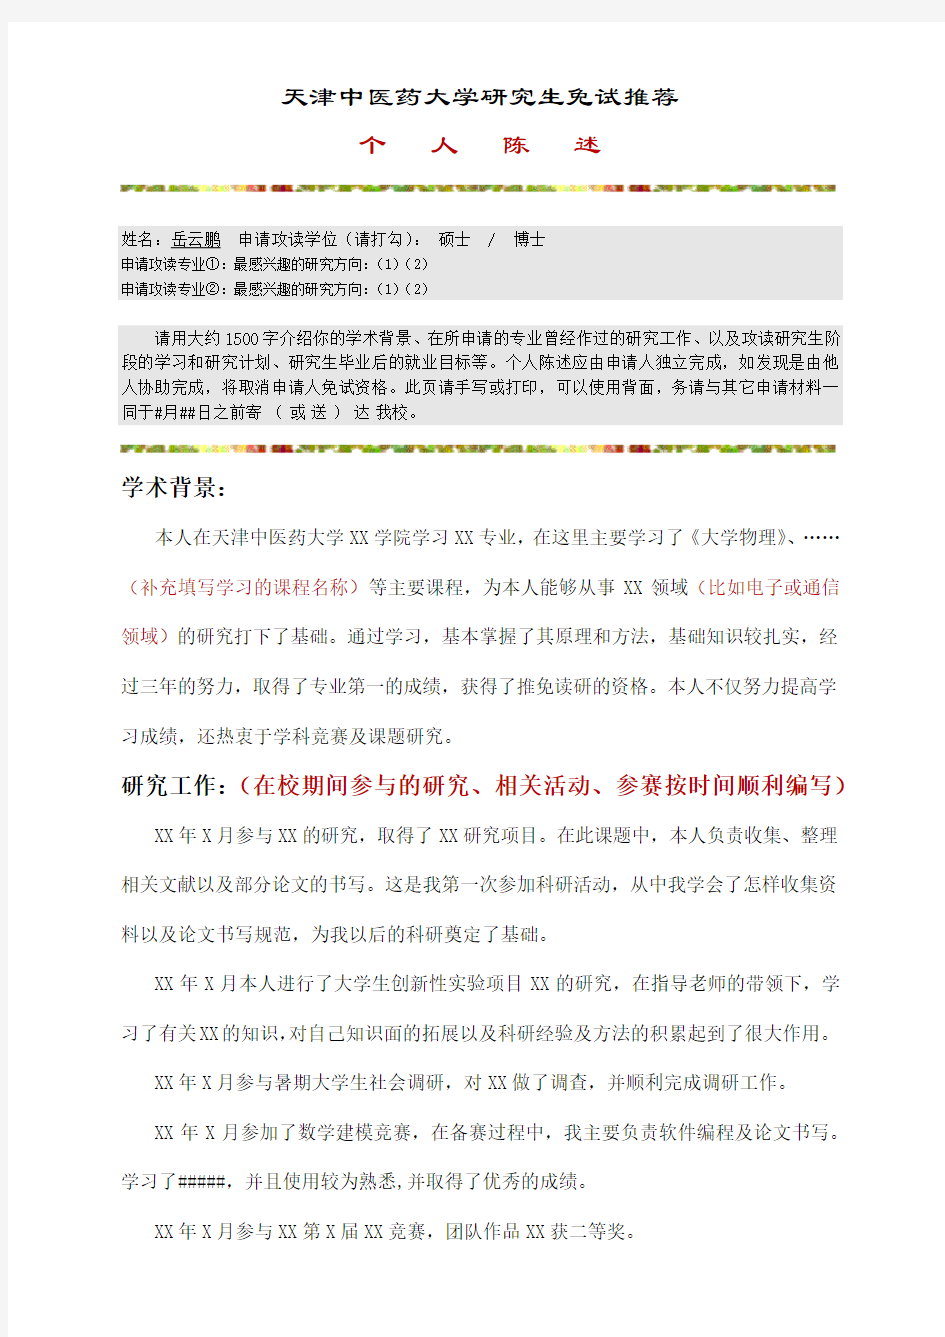 【推荐】个人陈述范文-天津中医药大学研究生免试推荐个人陈述